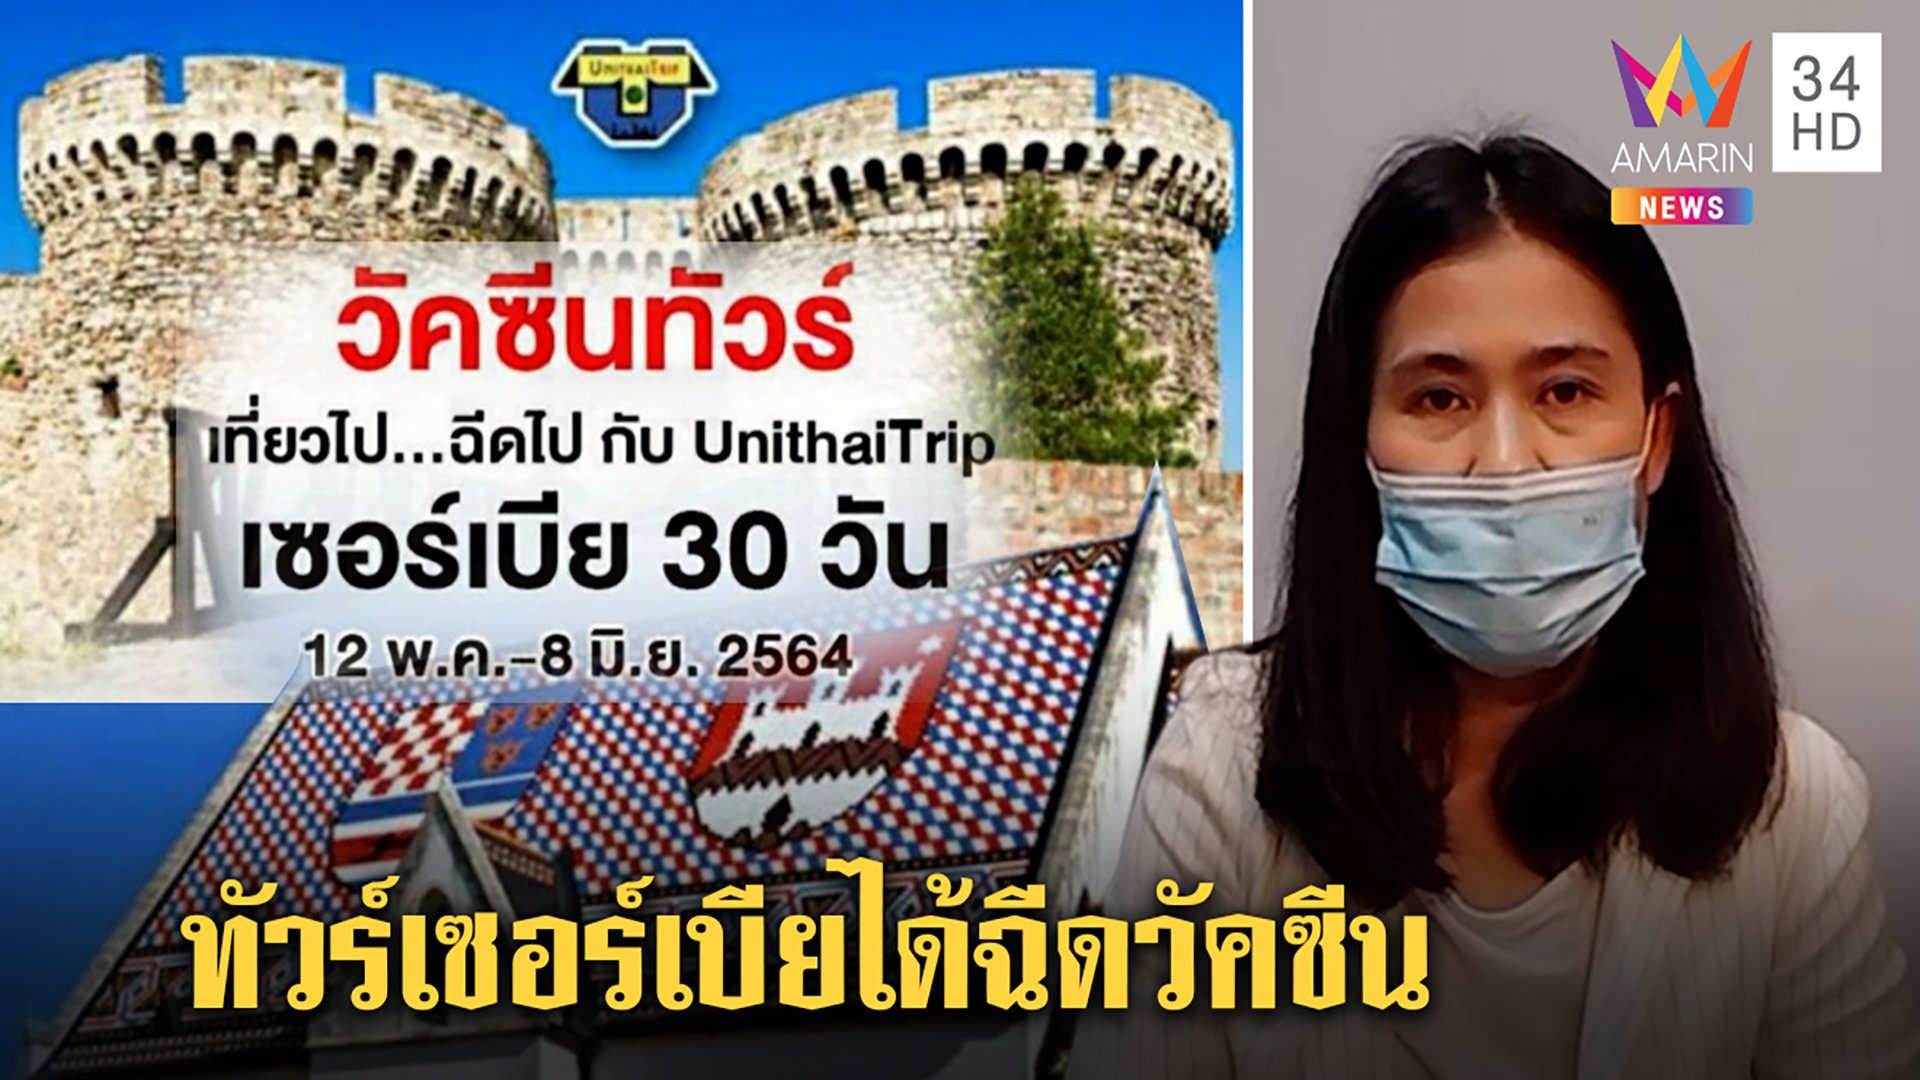 จัดทริปชวนคนไทยฉีดวัคซีนเซอร์เบียทำได้จริง ทัวร์แจงวิสัยทัศน์ผู้นำมองการไกล  | ทุบโต๊ะข่าว | 8 พ.ค. 64 | AMARIN TVHD34